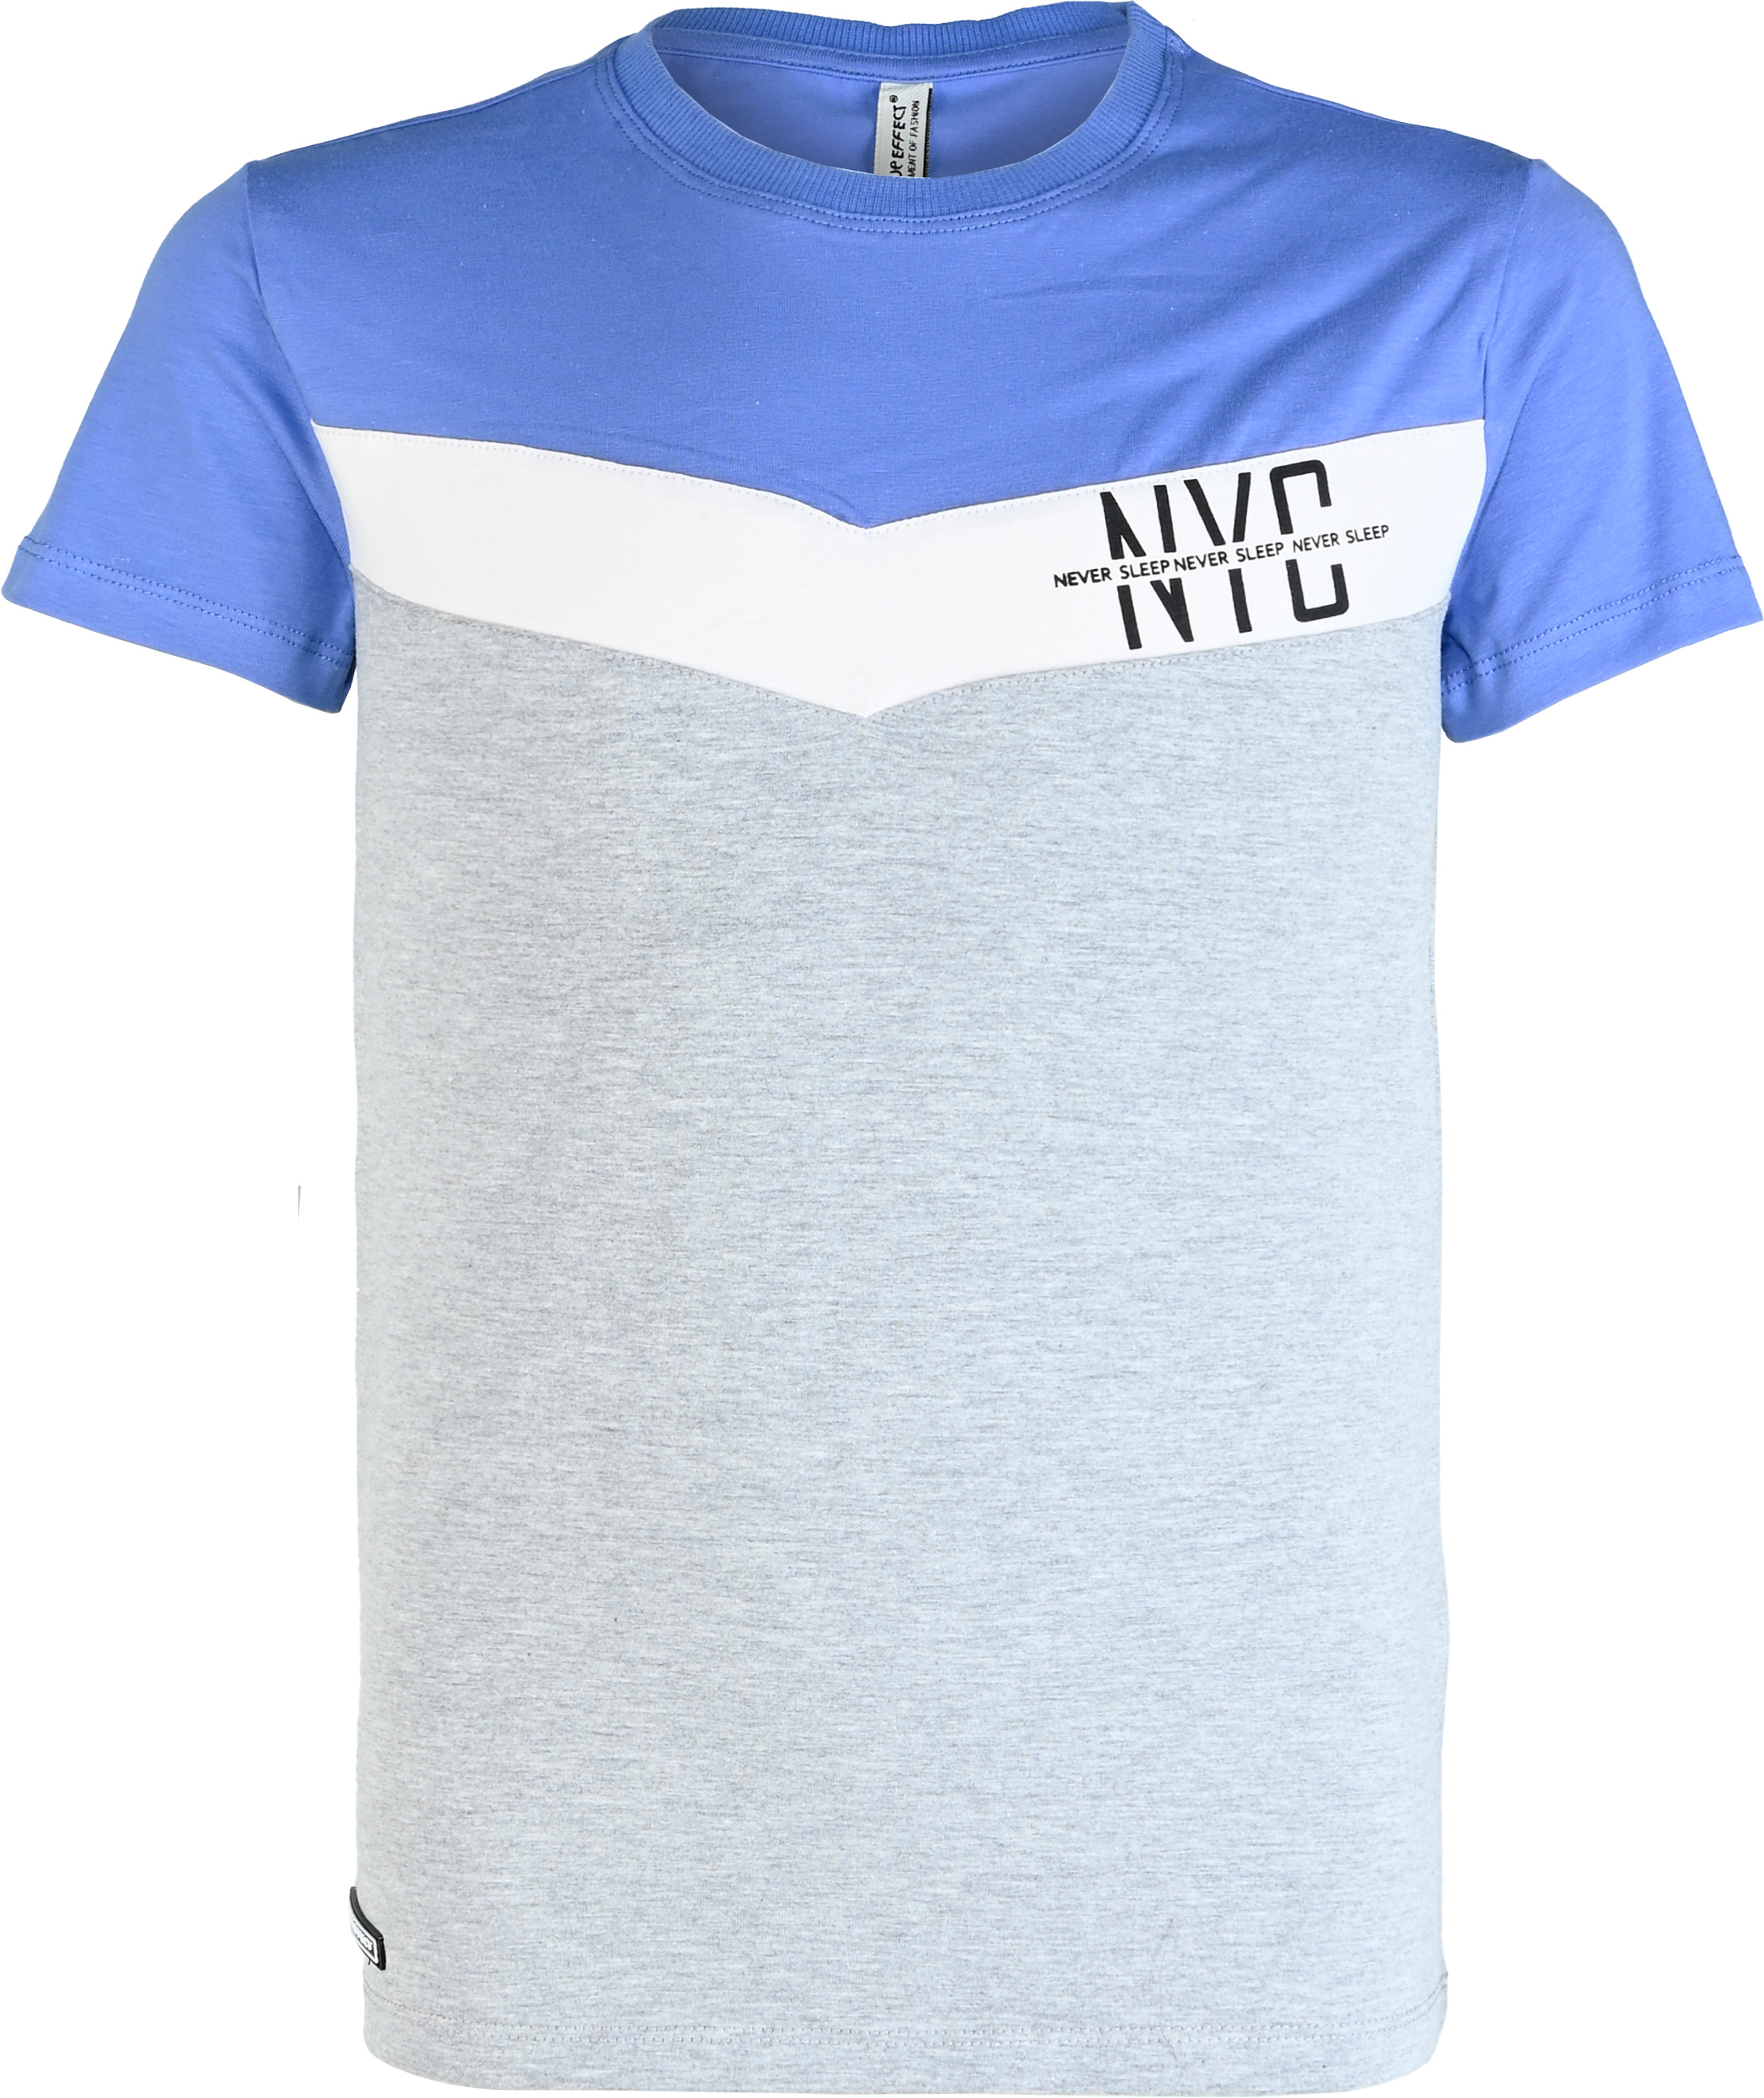 6200-Boys T-Shirt -NYC